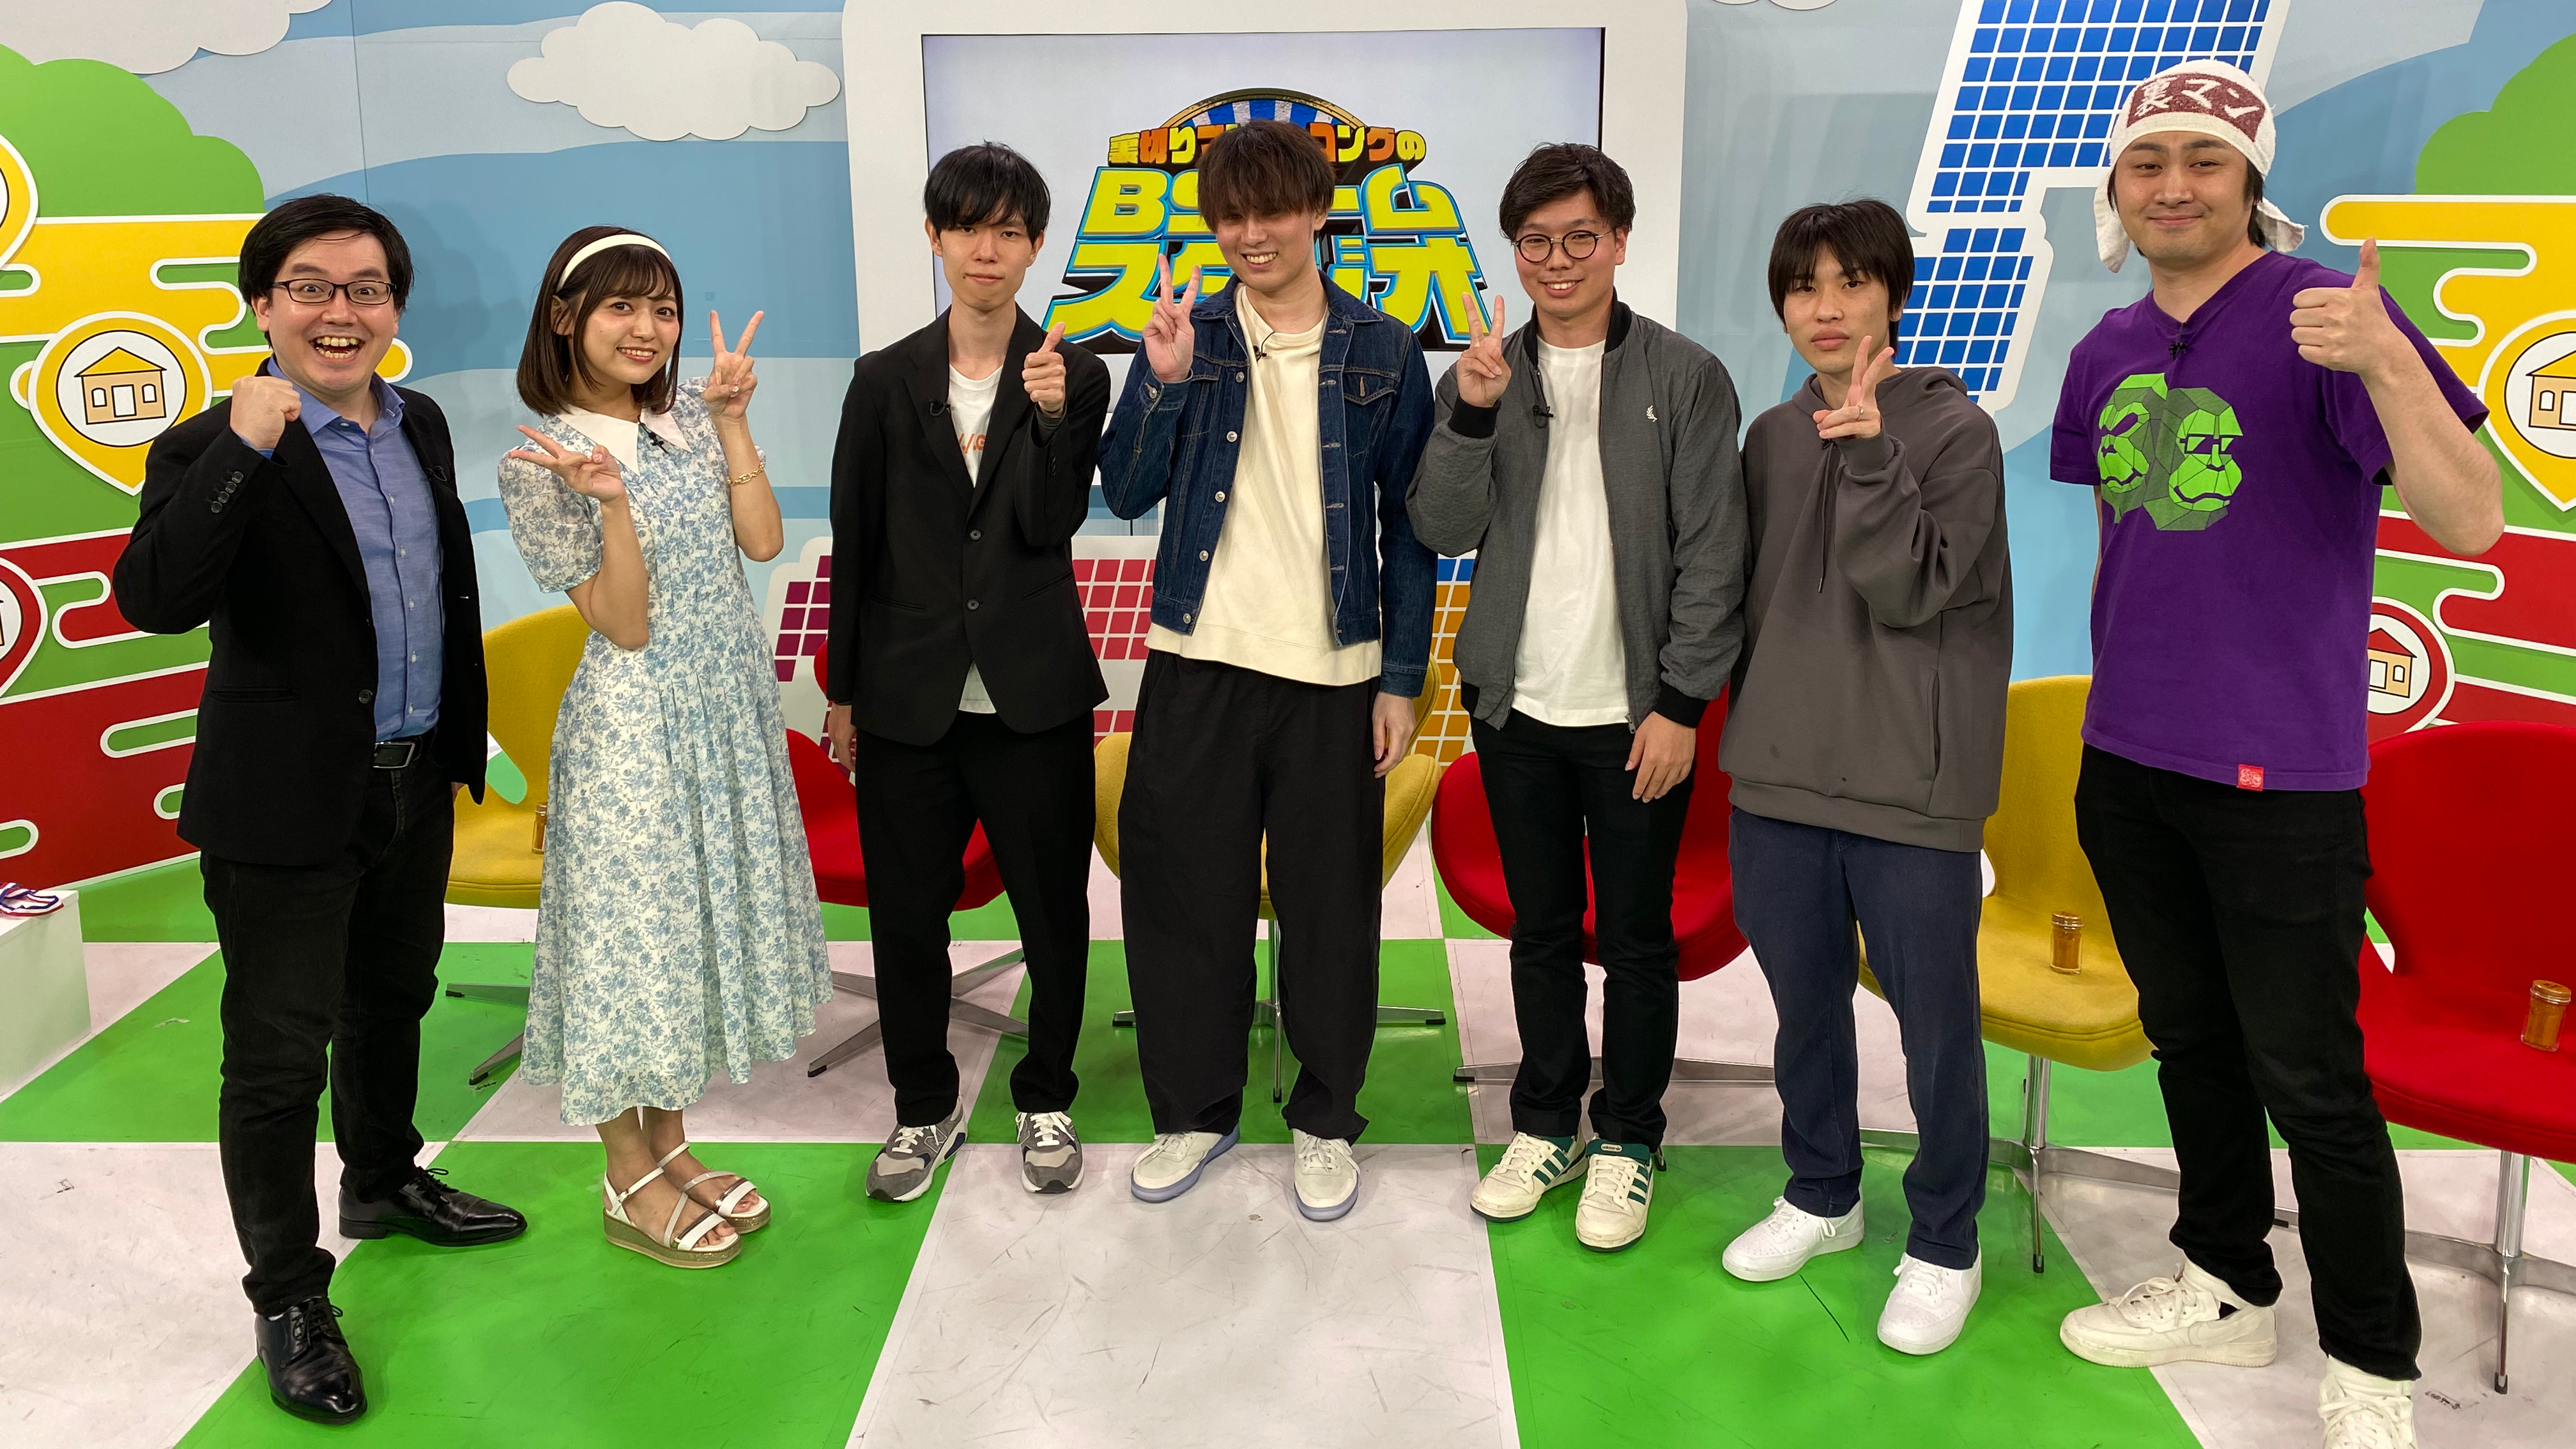 FANY マガジン：『裏切りマンキーコングのBSゲームスタジオ』6月4日放送! 元NGT48中村歩加と『スプラトゥーン3』のさらなる上達にチャレンジ!